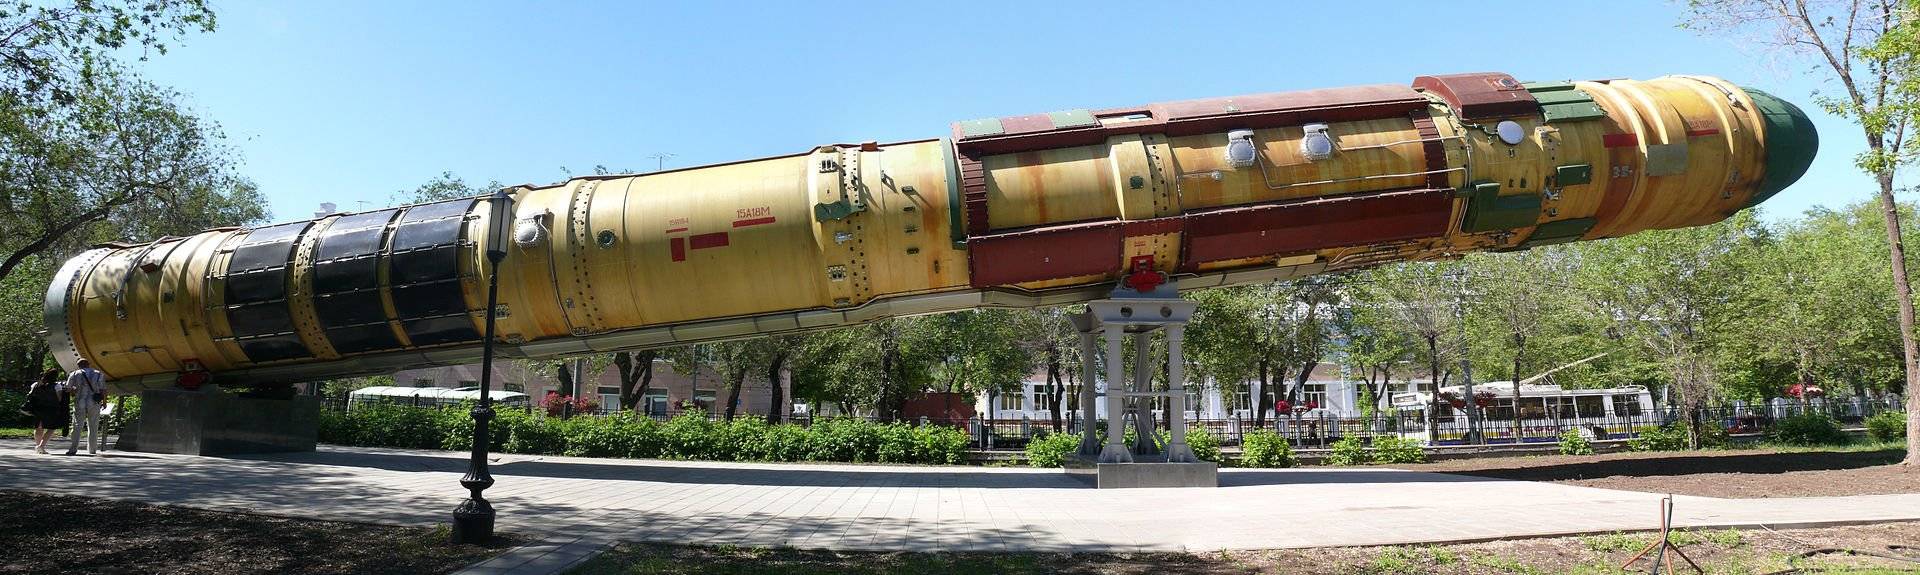 Абсолютное оружие: за что ракету р-36м прозвали "сатаной"